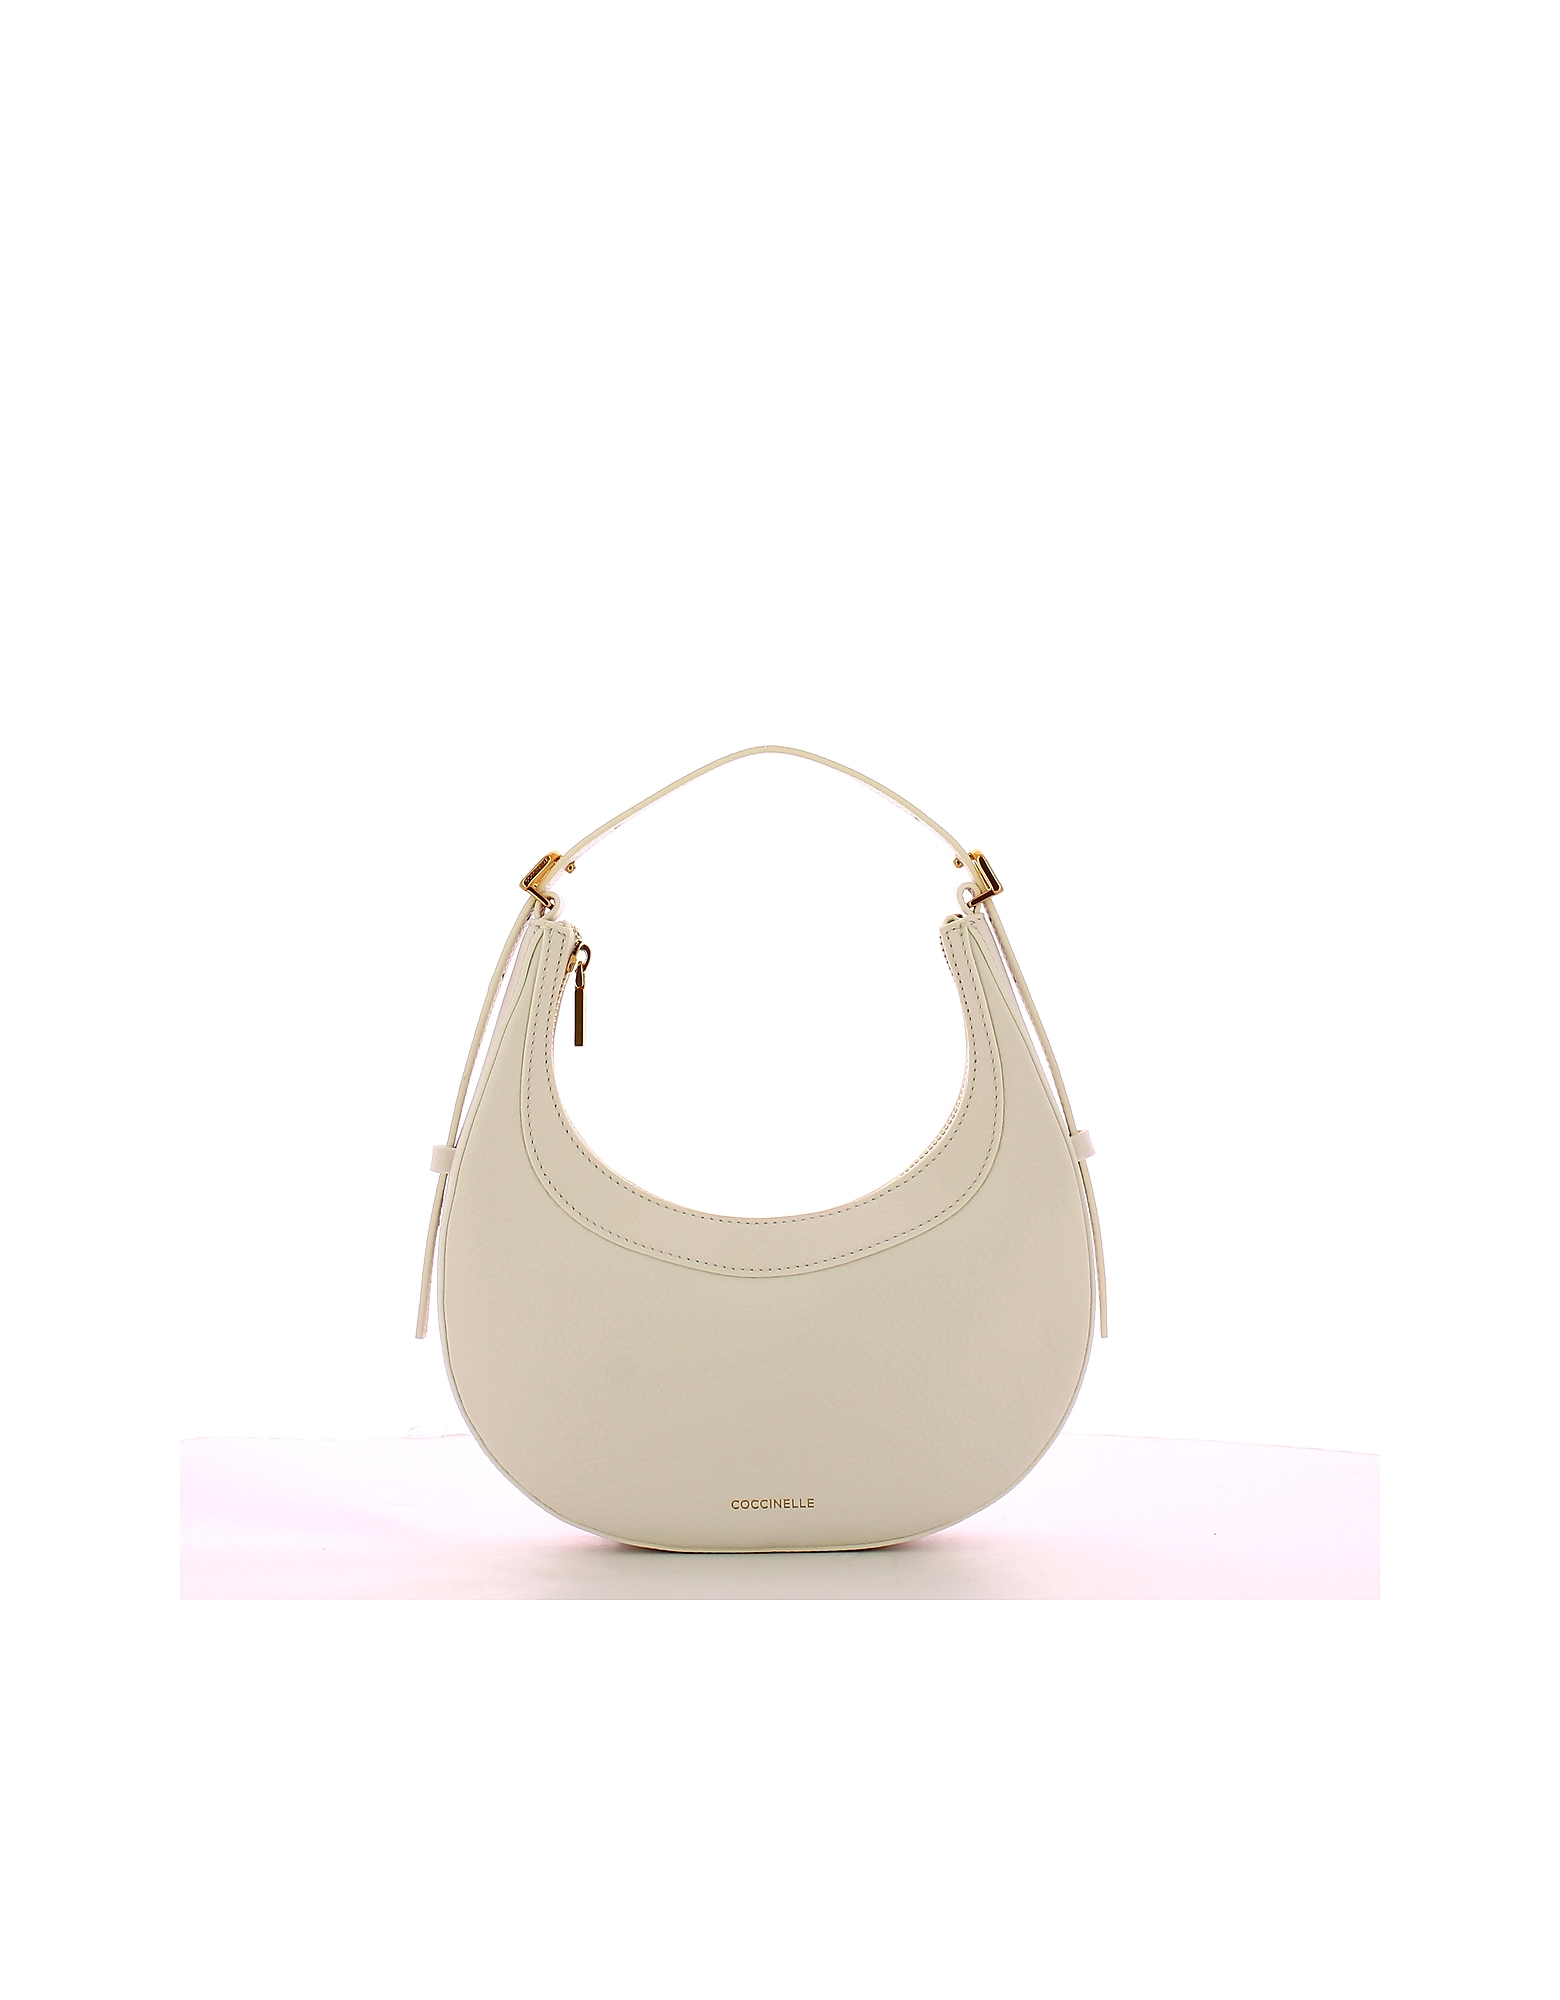 Coccinelle Designer Handbags Women's White Mini Bag